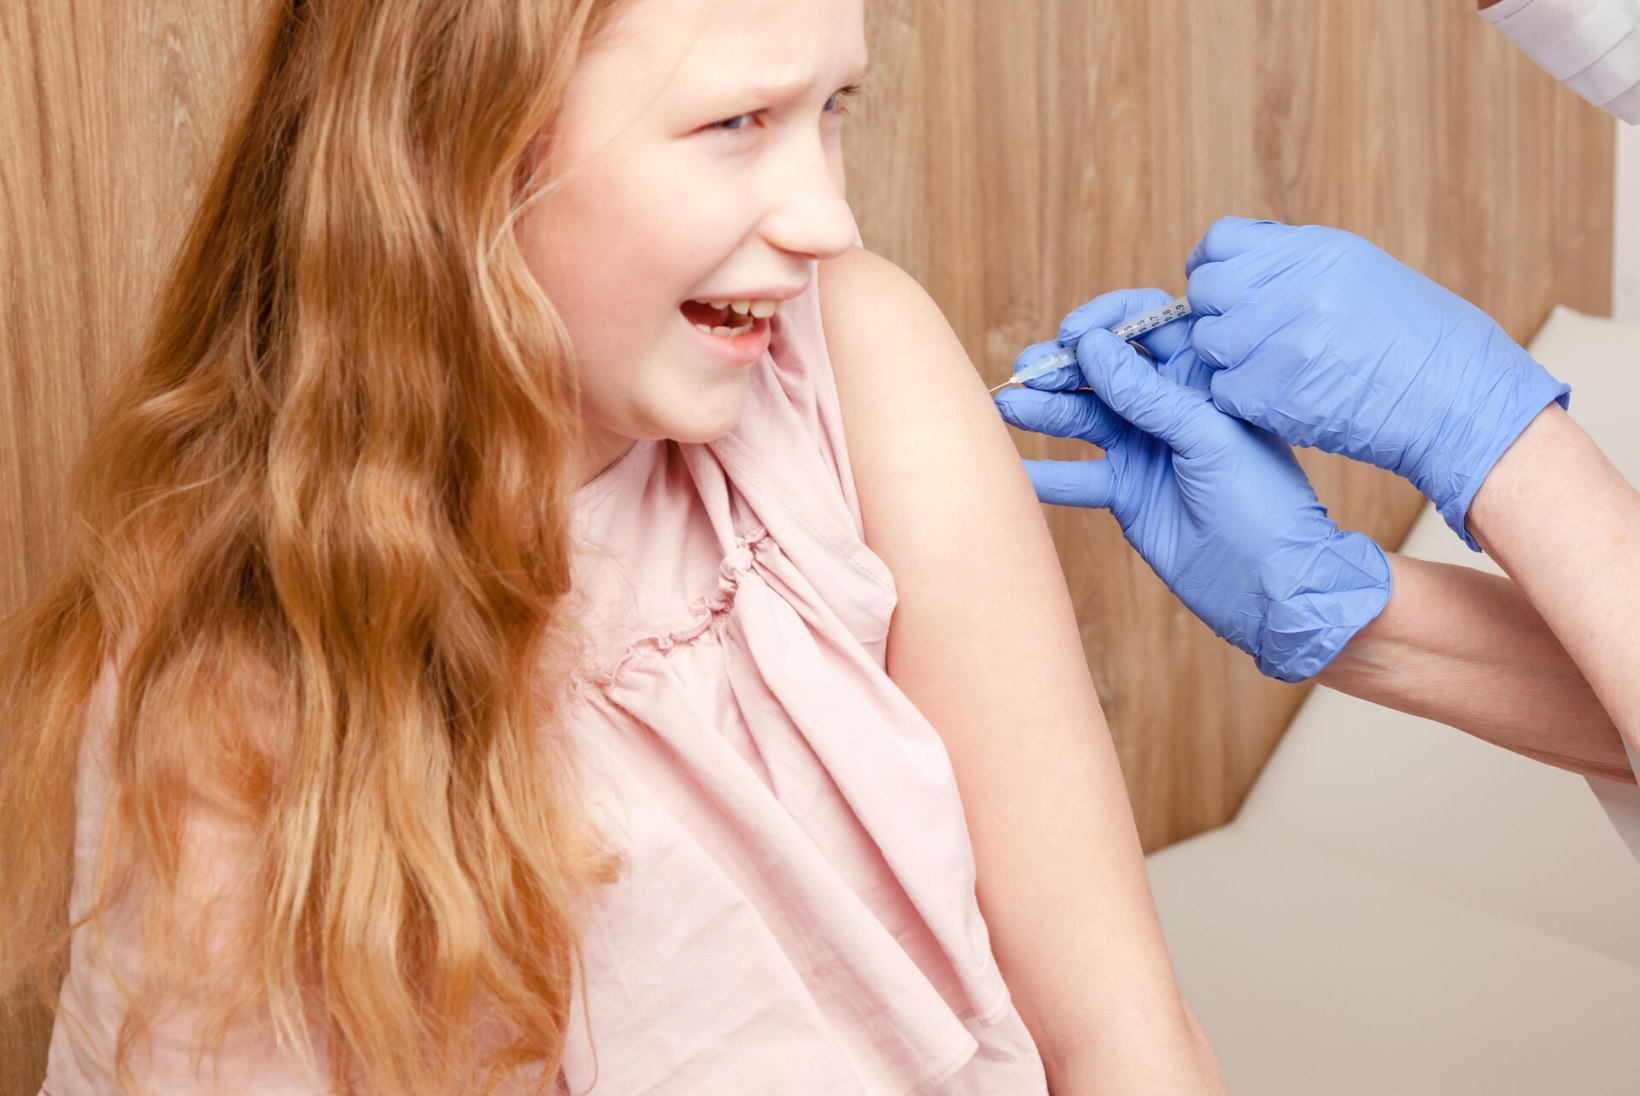 MURELIK LAPSEVANEM: „Viiksin teismelise tütre kohe vaktsineerima, kui oleks rohkem infot. Kas see on ikka ohutu?“